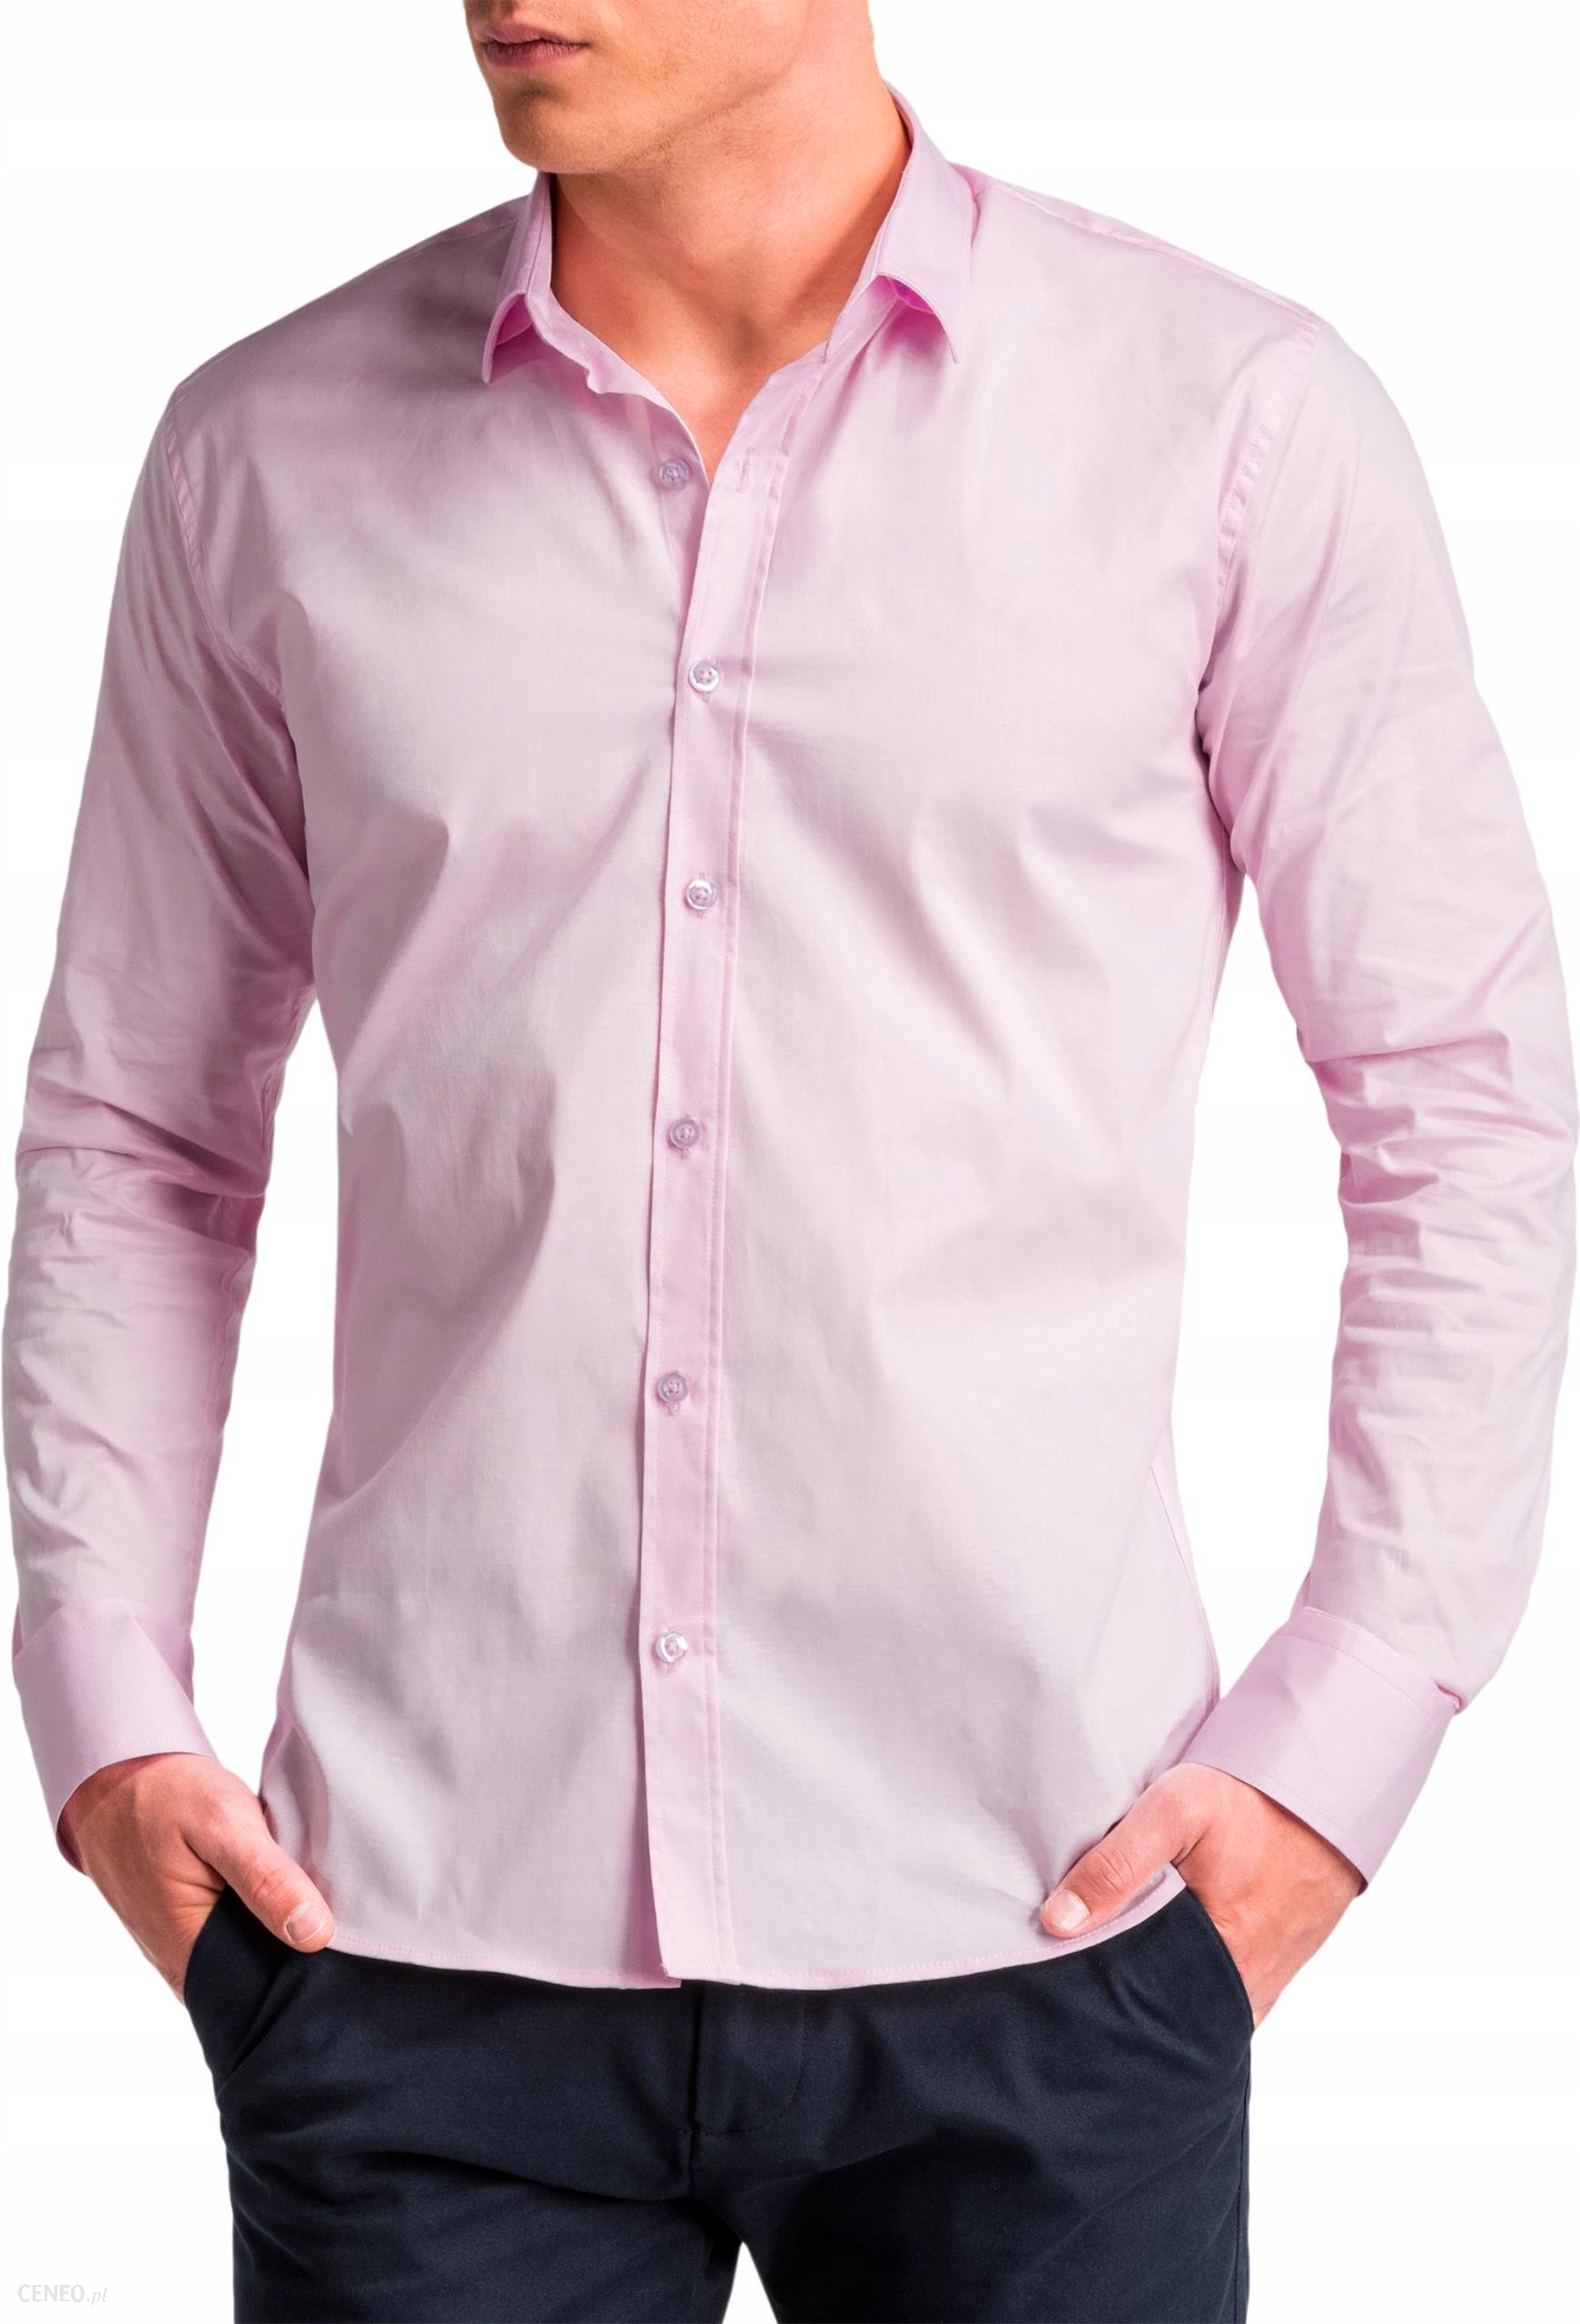 Производитель мужских рубашек. Розовая рубашка. Рубашка мужская. Мужчина в розовой рубашке. Розовая сорочка мужская.